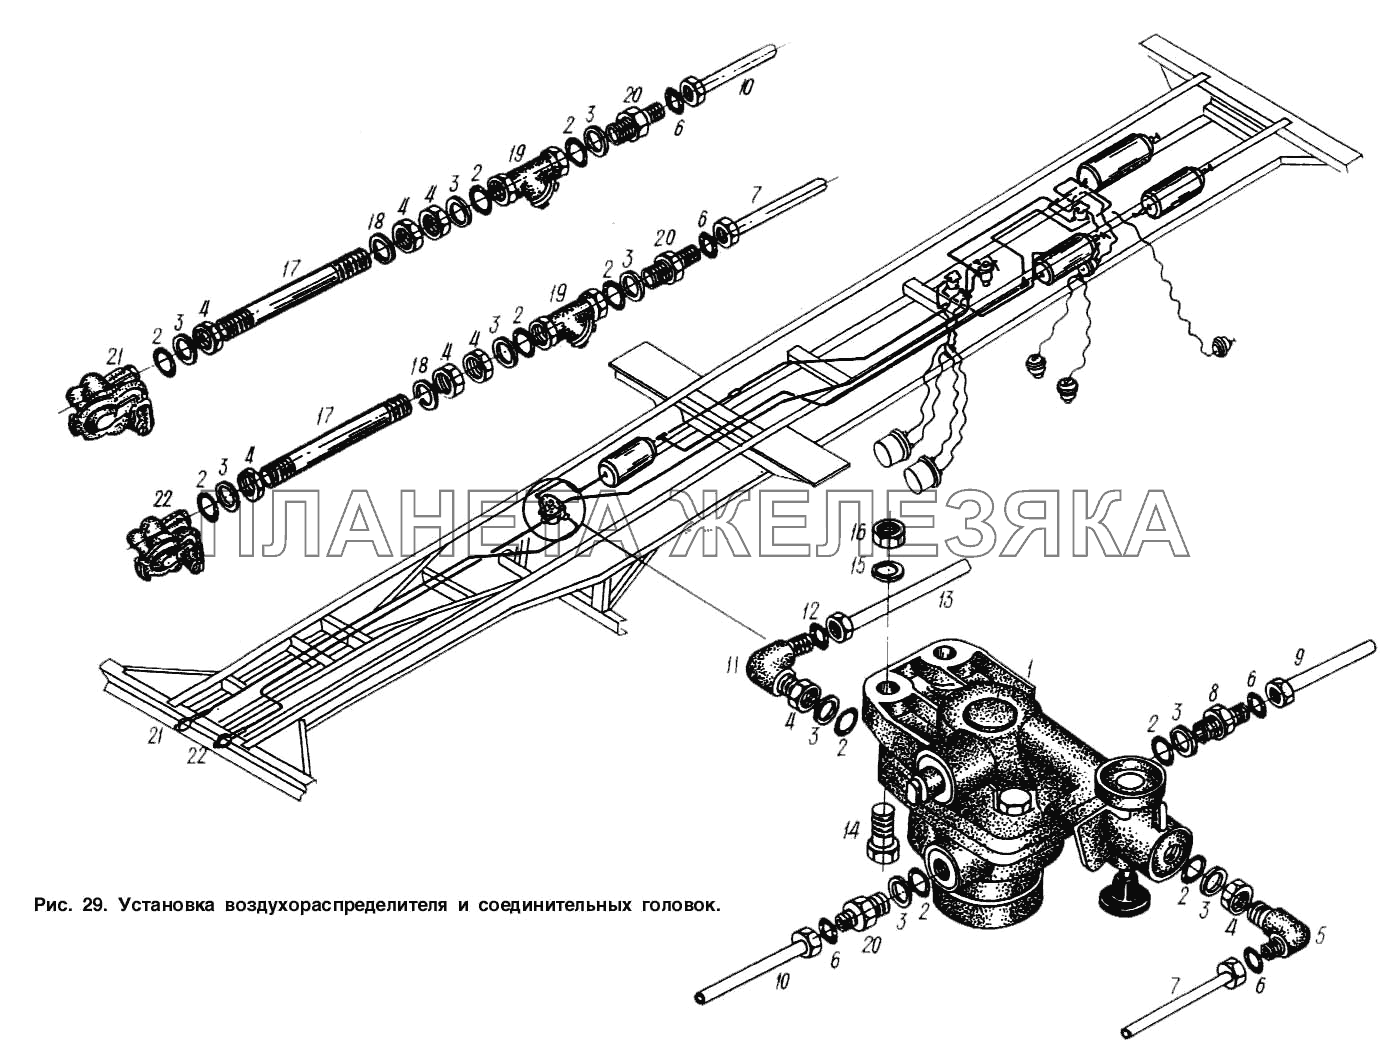 Установка воздухораспределителя и соединительных головок МАЗ-93892